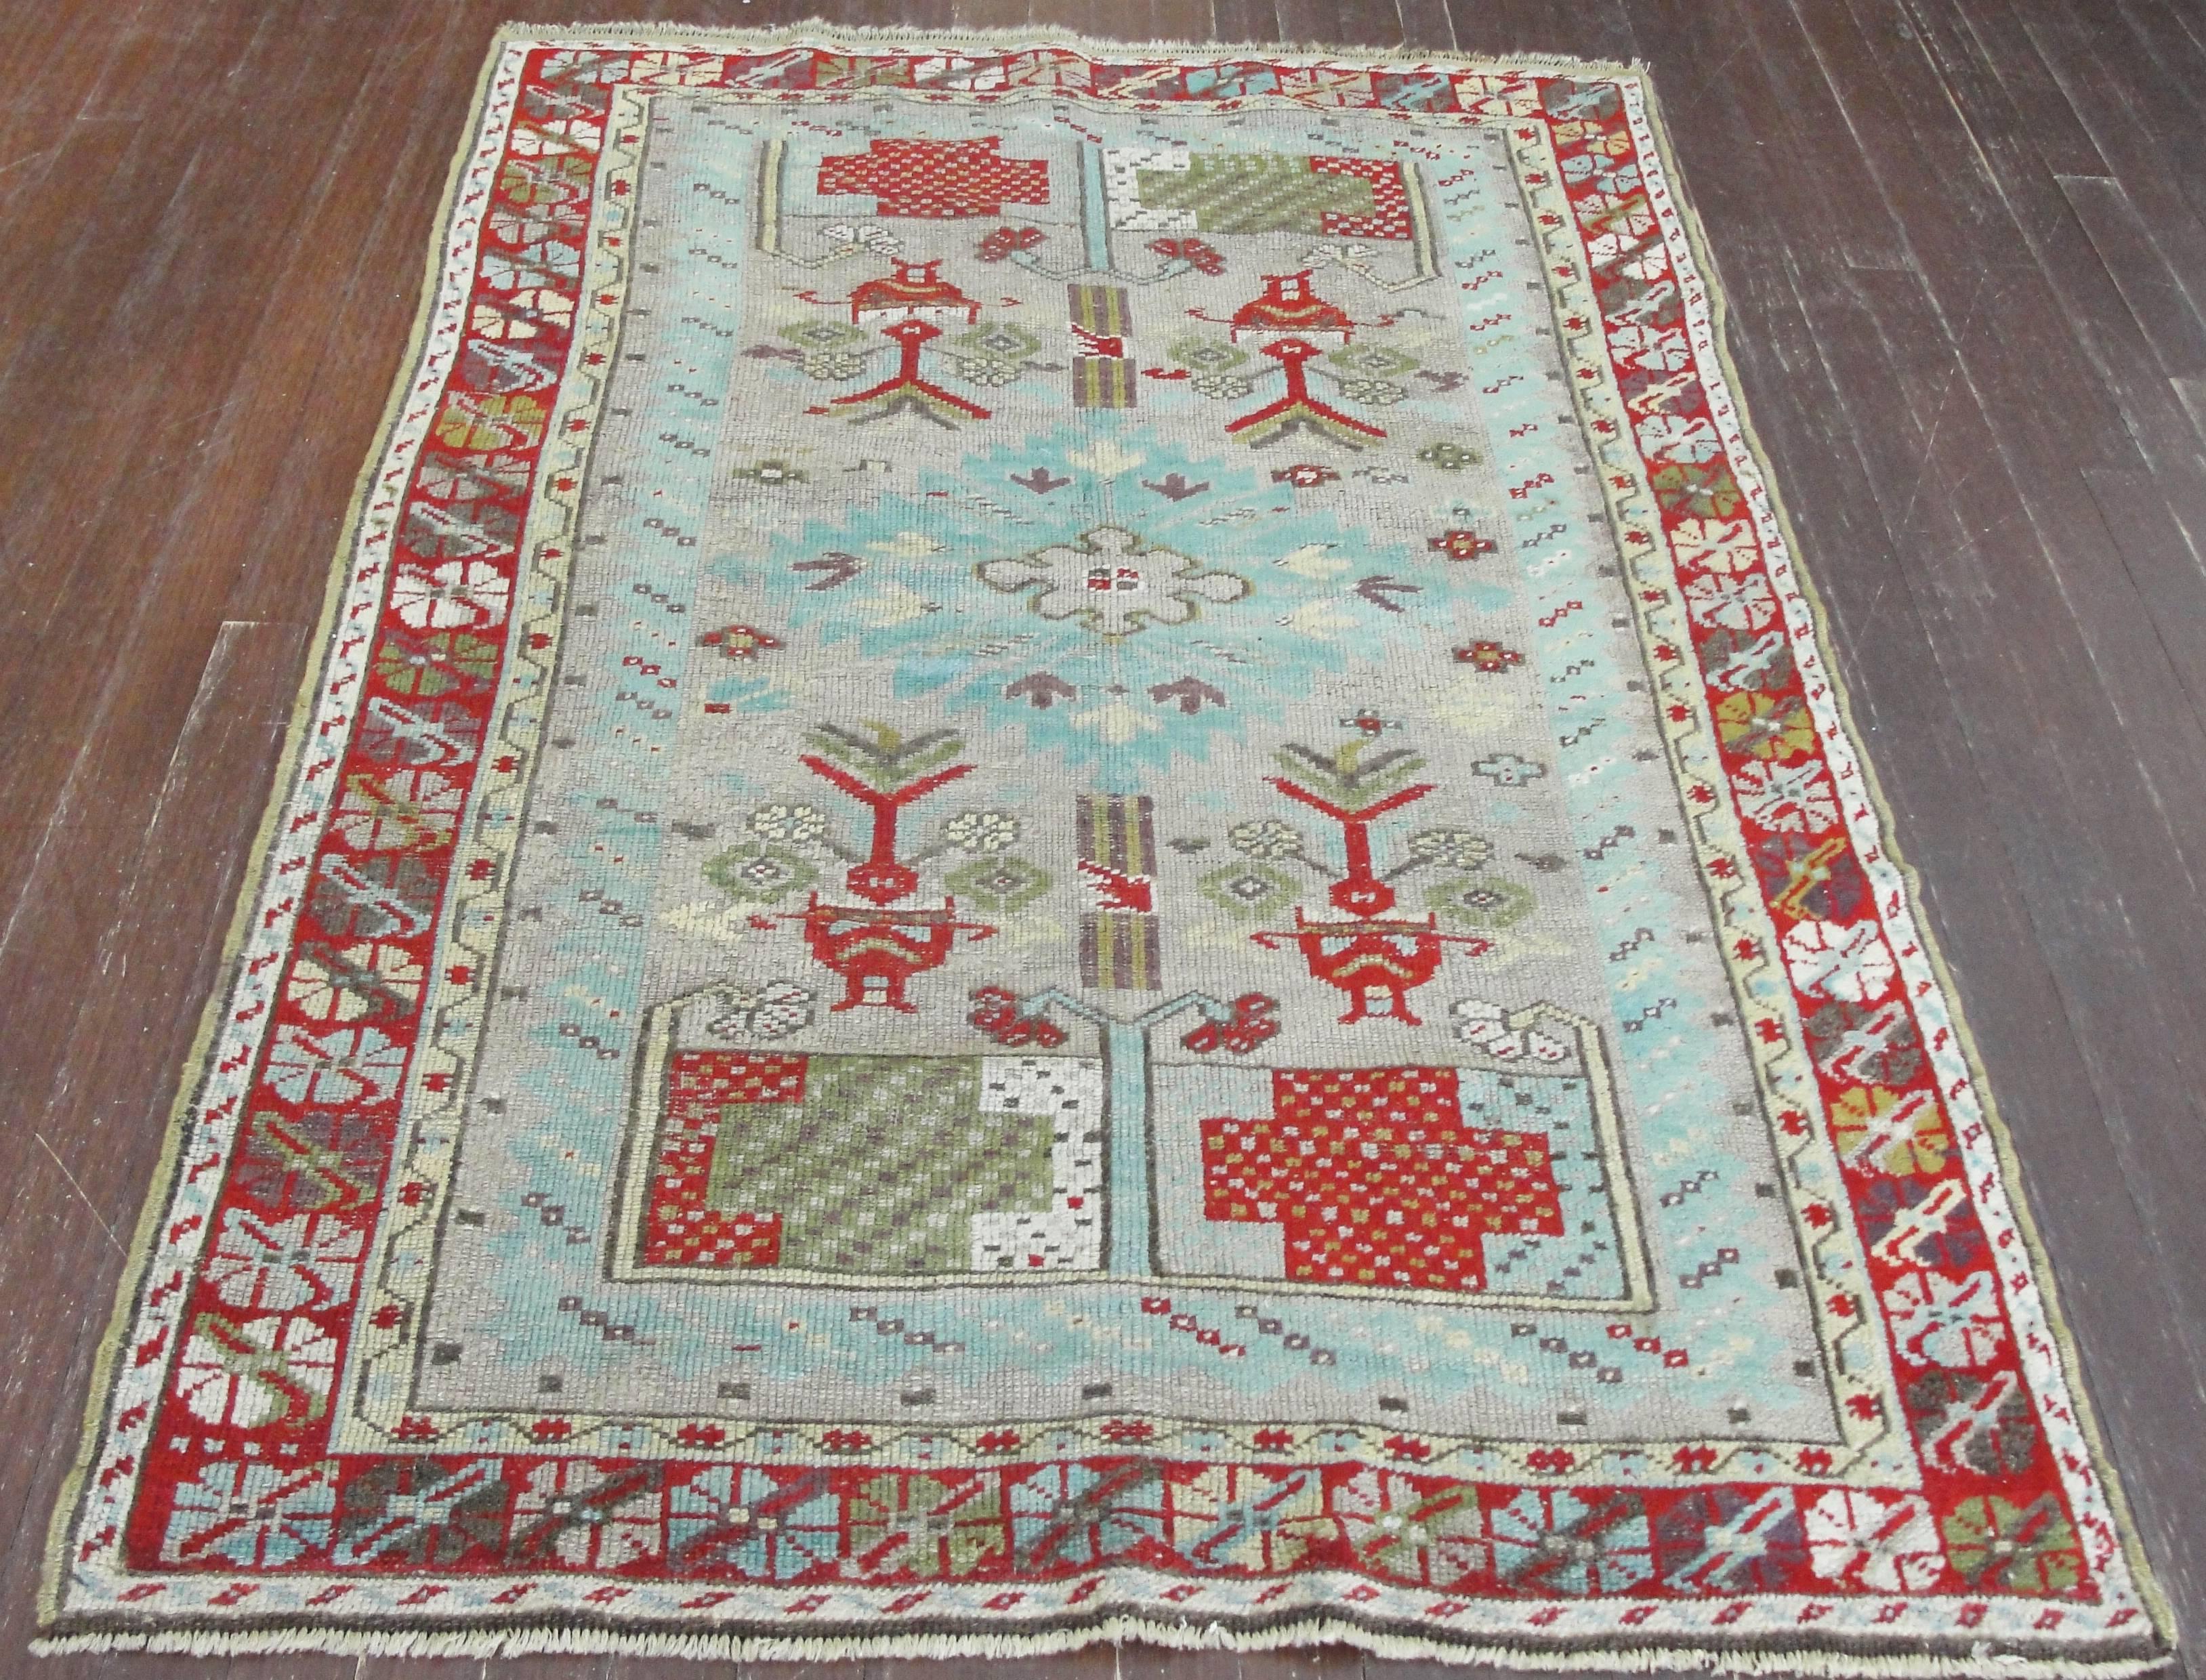  Antique Turkish Ghiordes Rug, 3'5